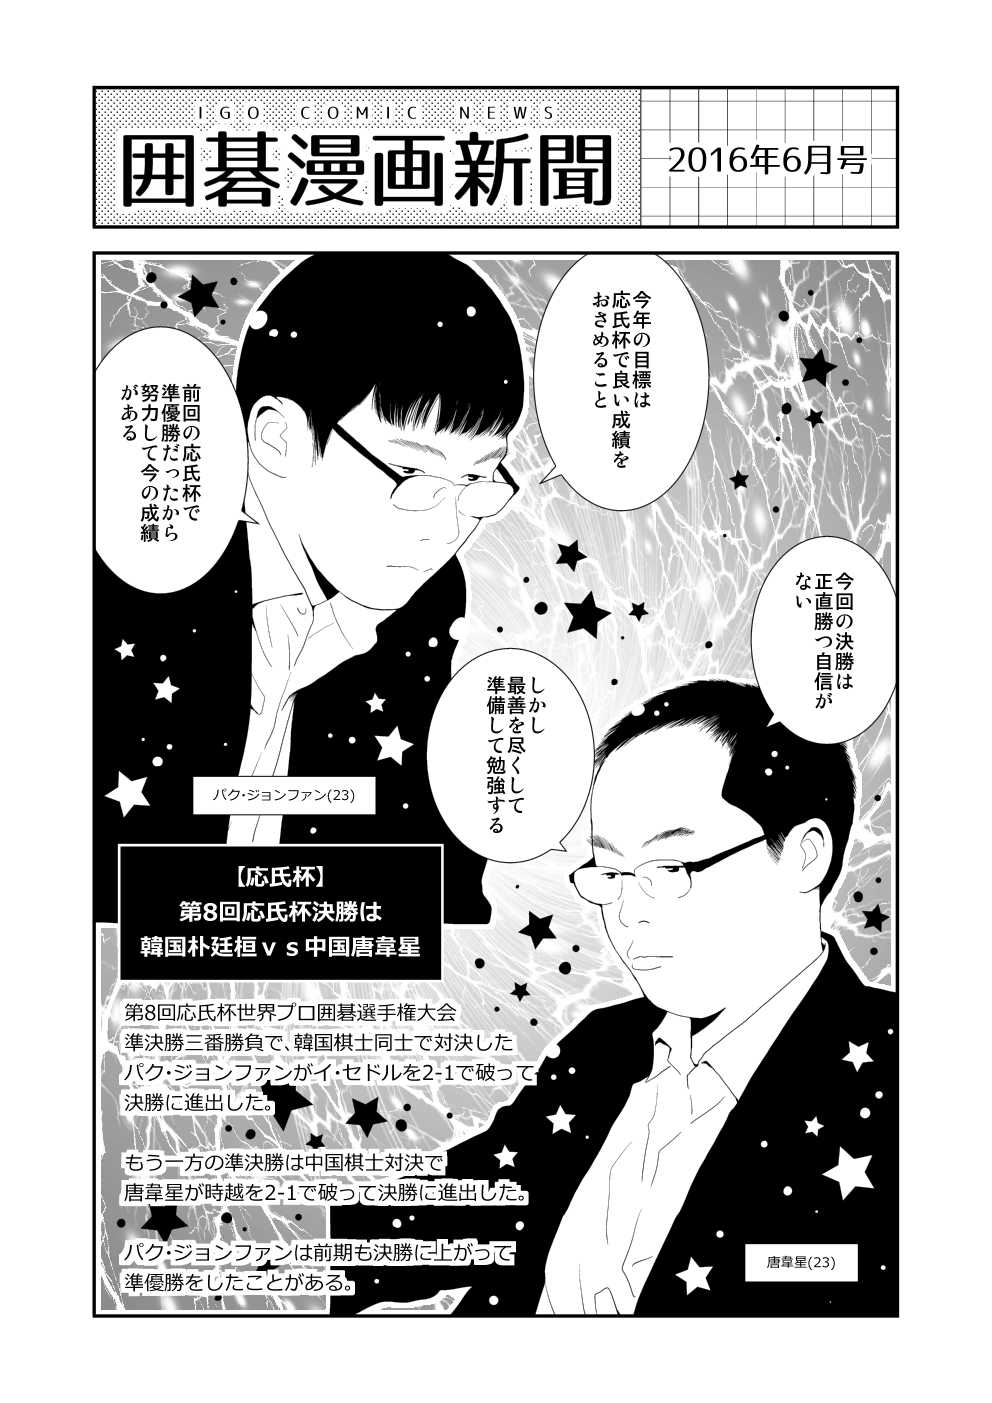 囲碁漫画新聞 16年6月号 韓国語版 中国語版有り Nitro15